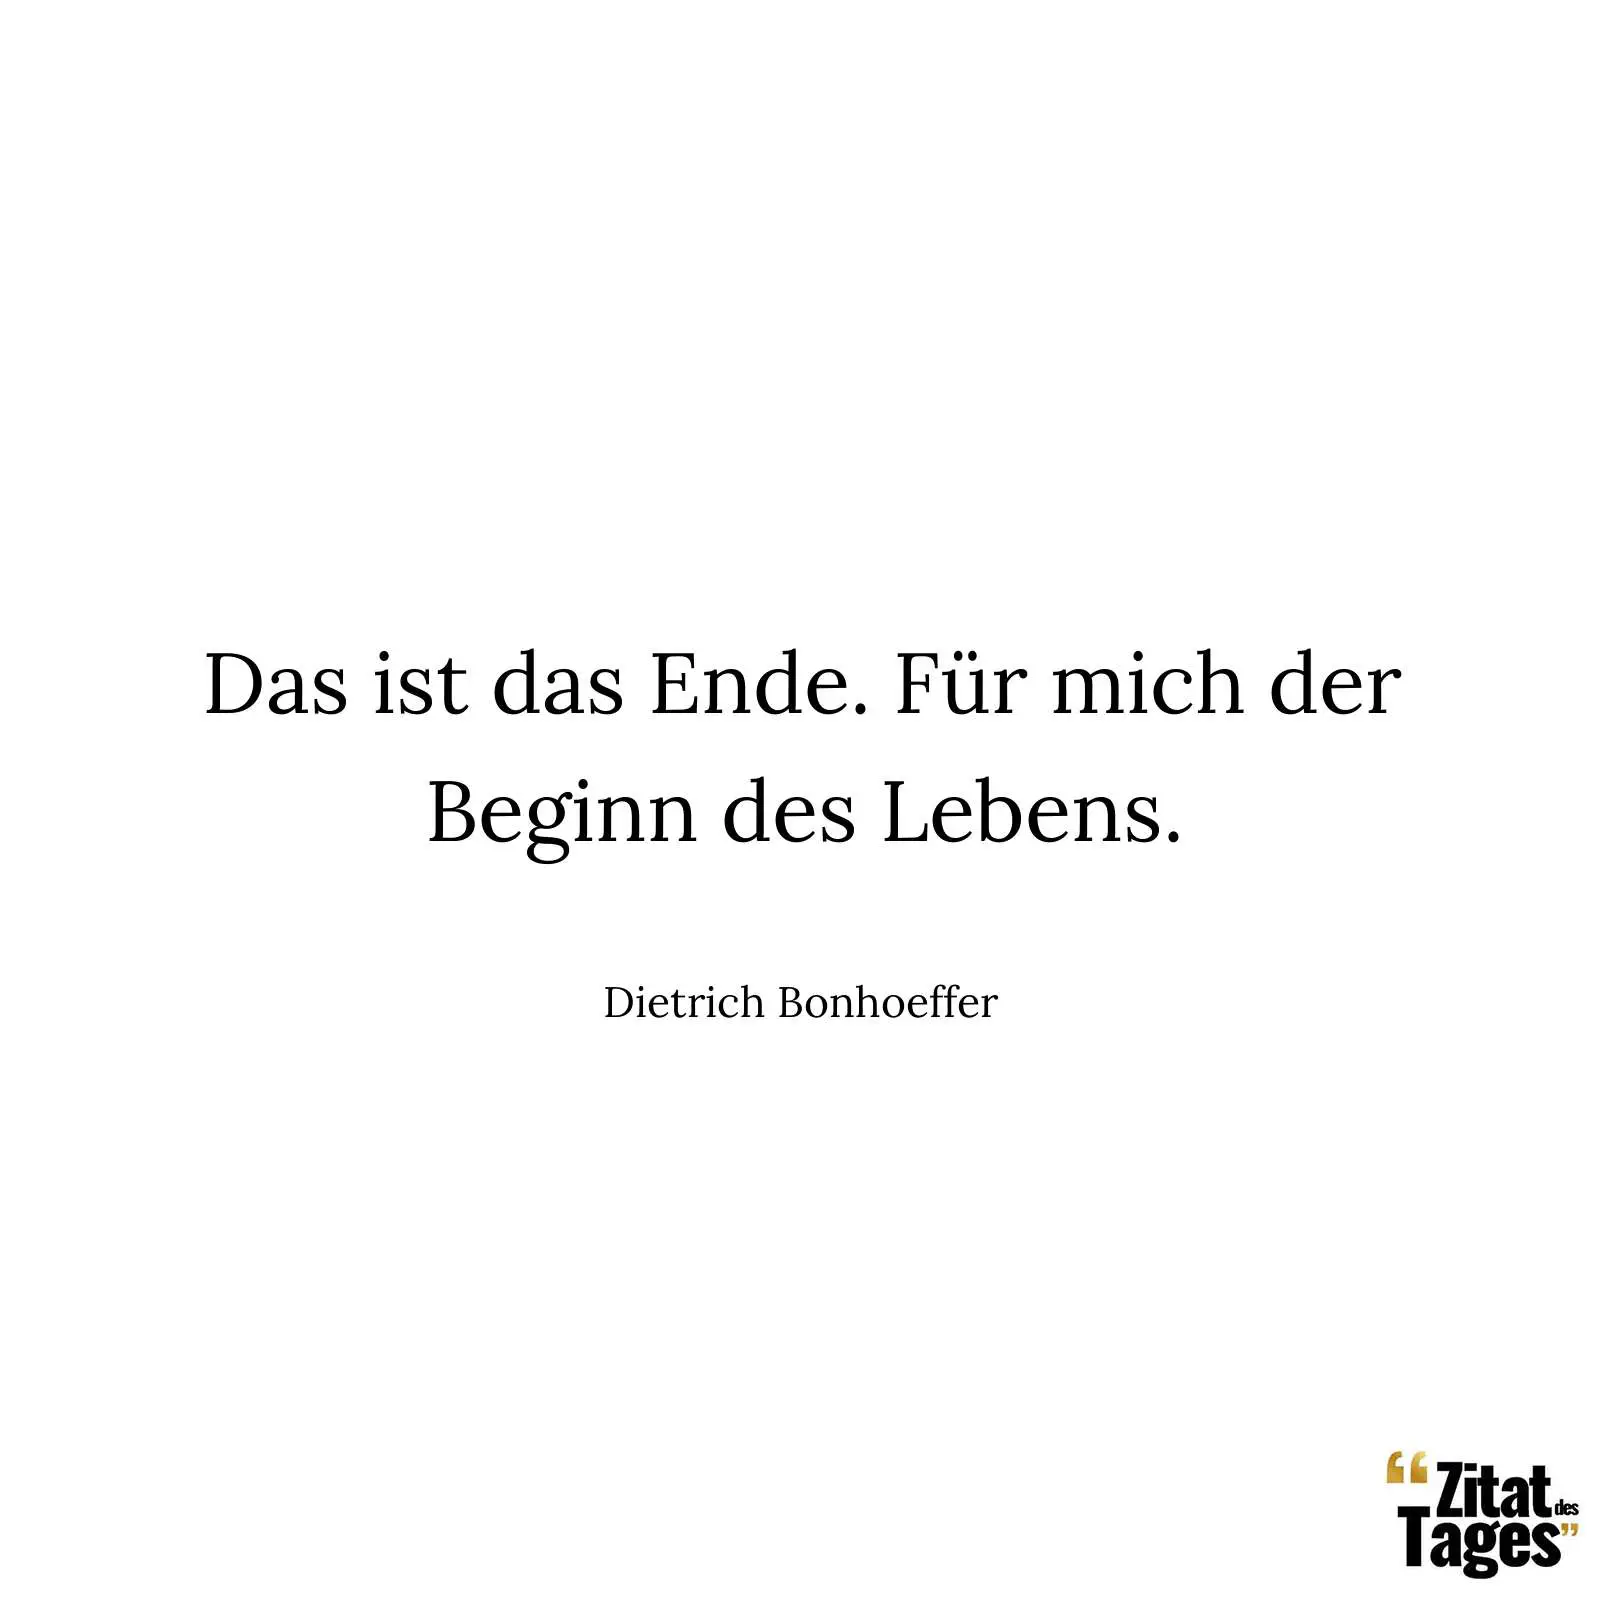 Das ist das Ende. Für mich der Beginn des Lebens. - Dietrich Bonhoeffer